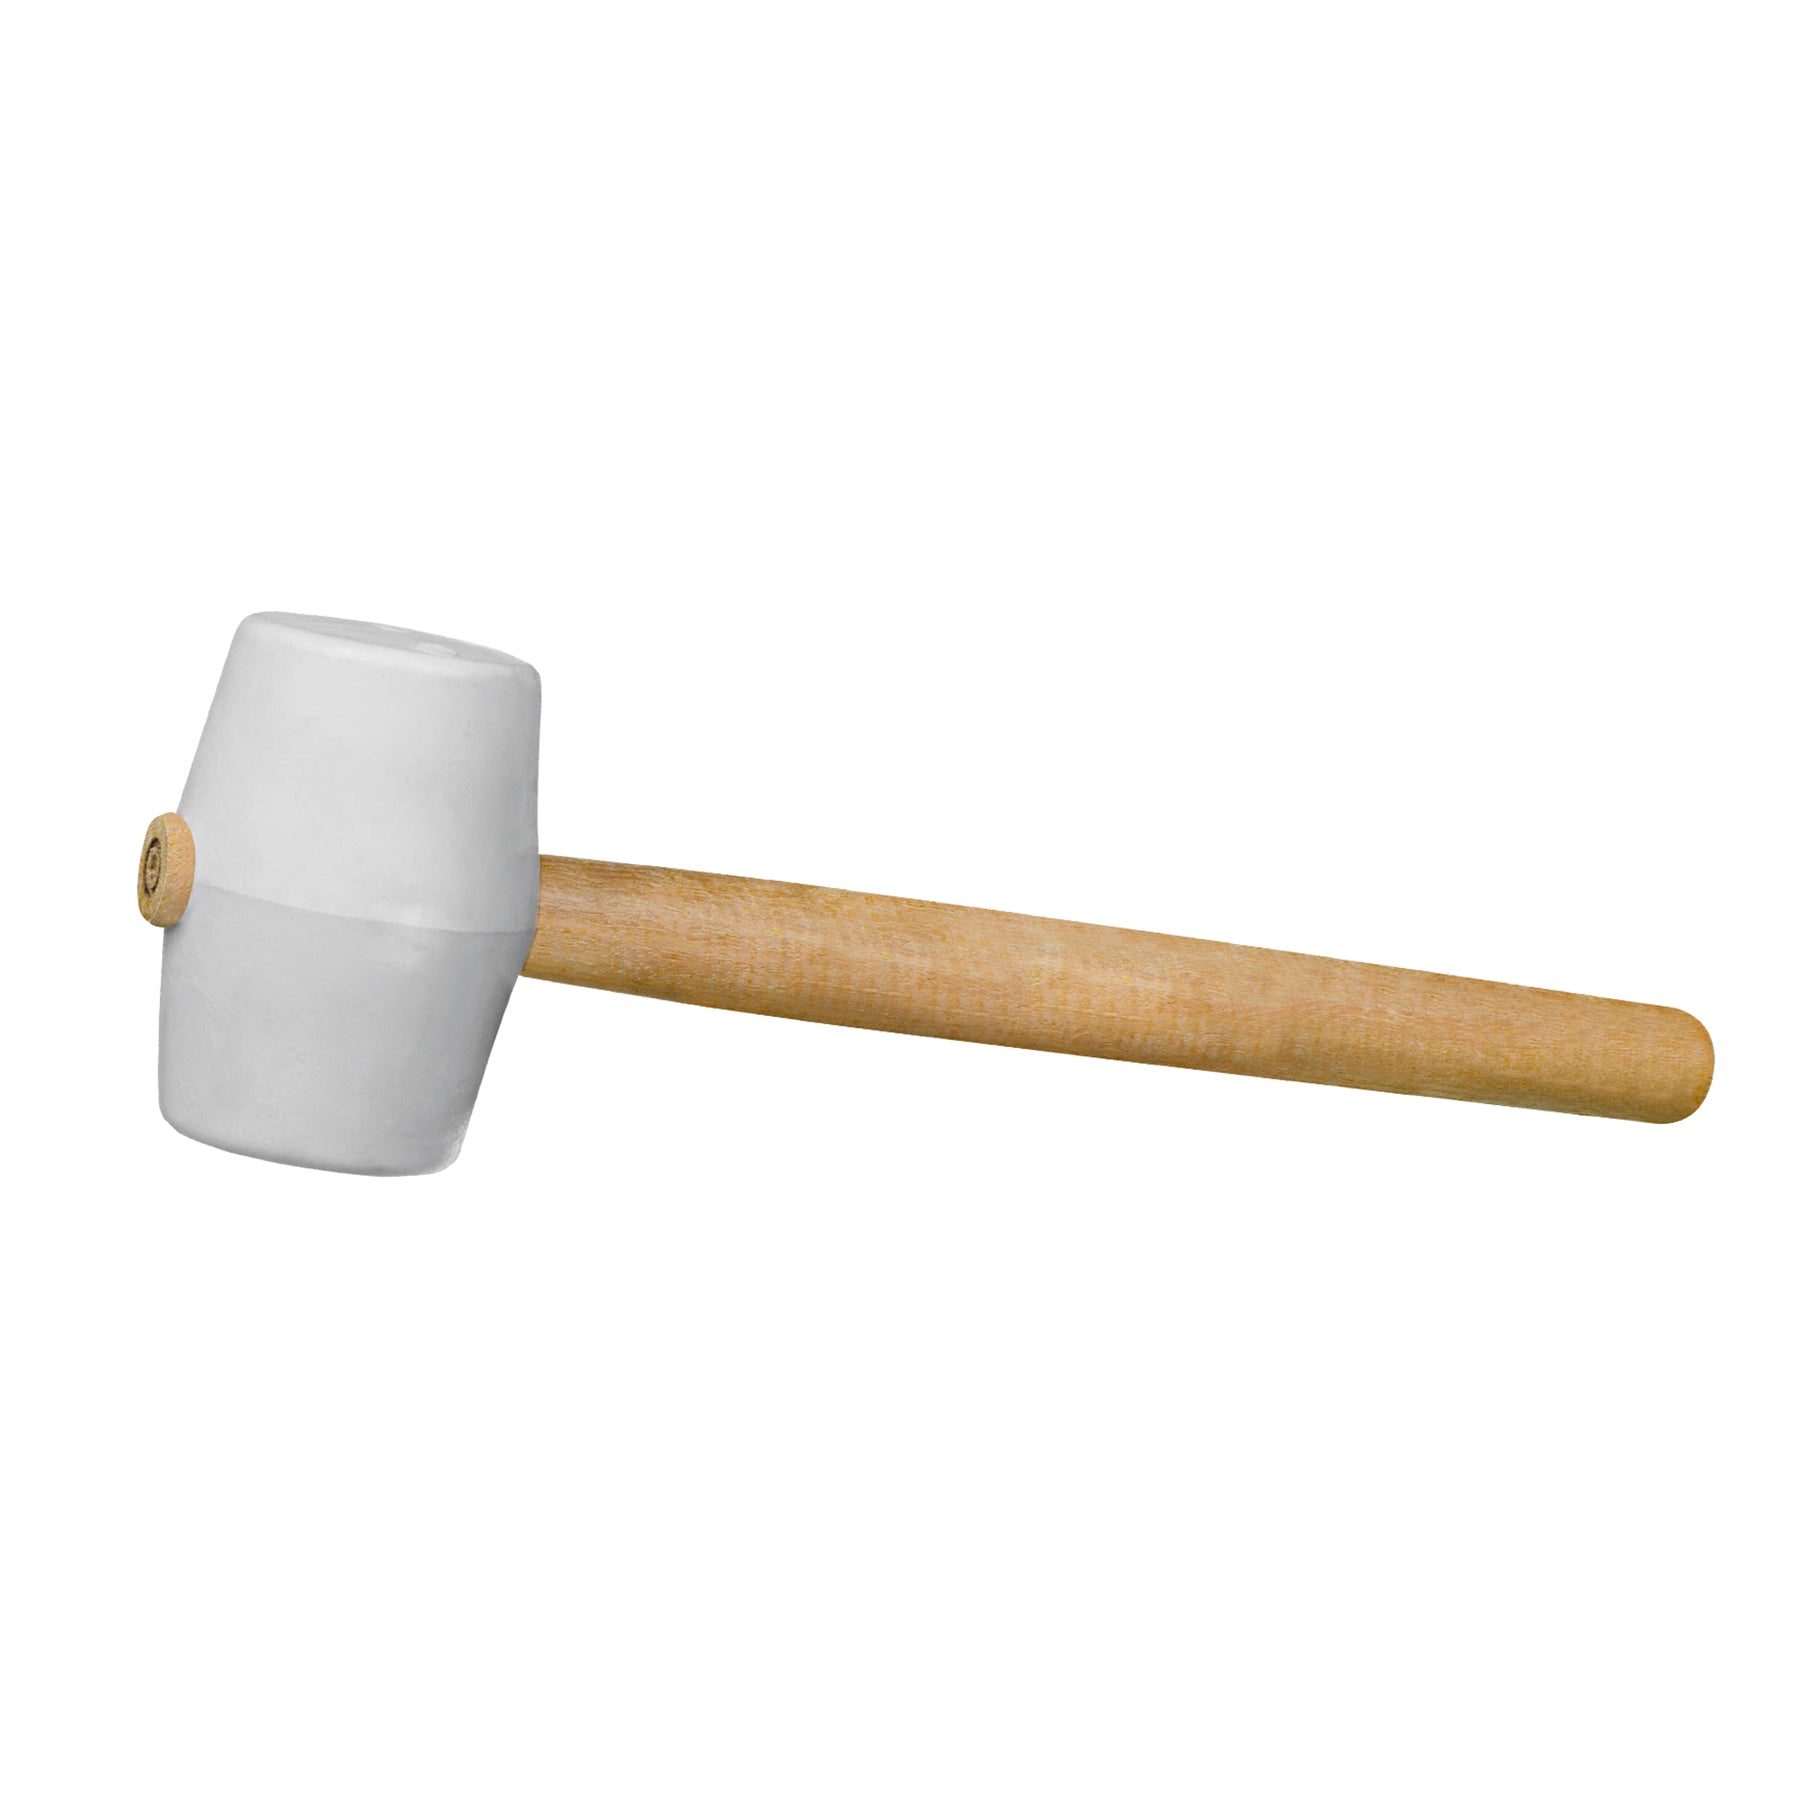 White Rubber Hammer - 50 MM - for Ceramic and Porcelain Tiles